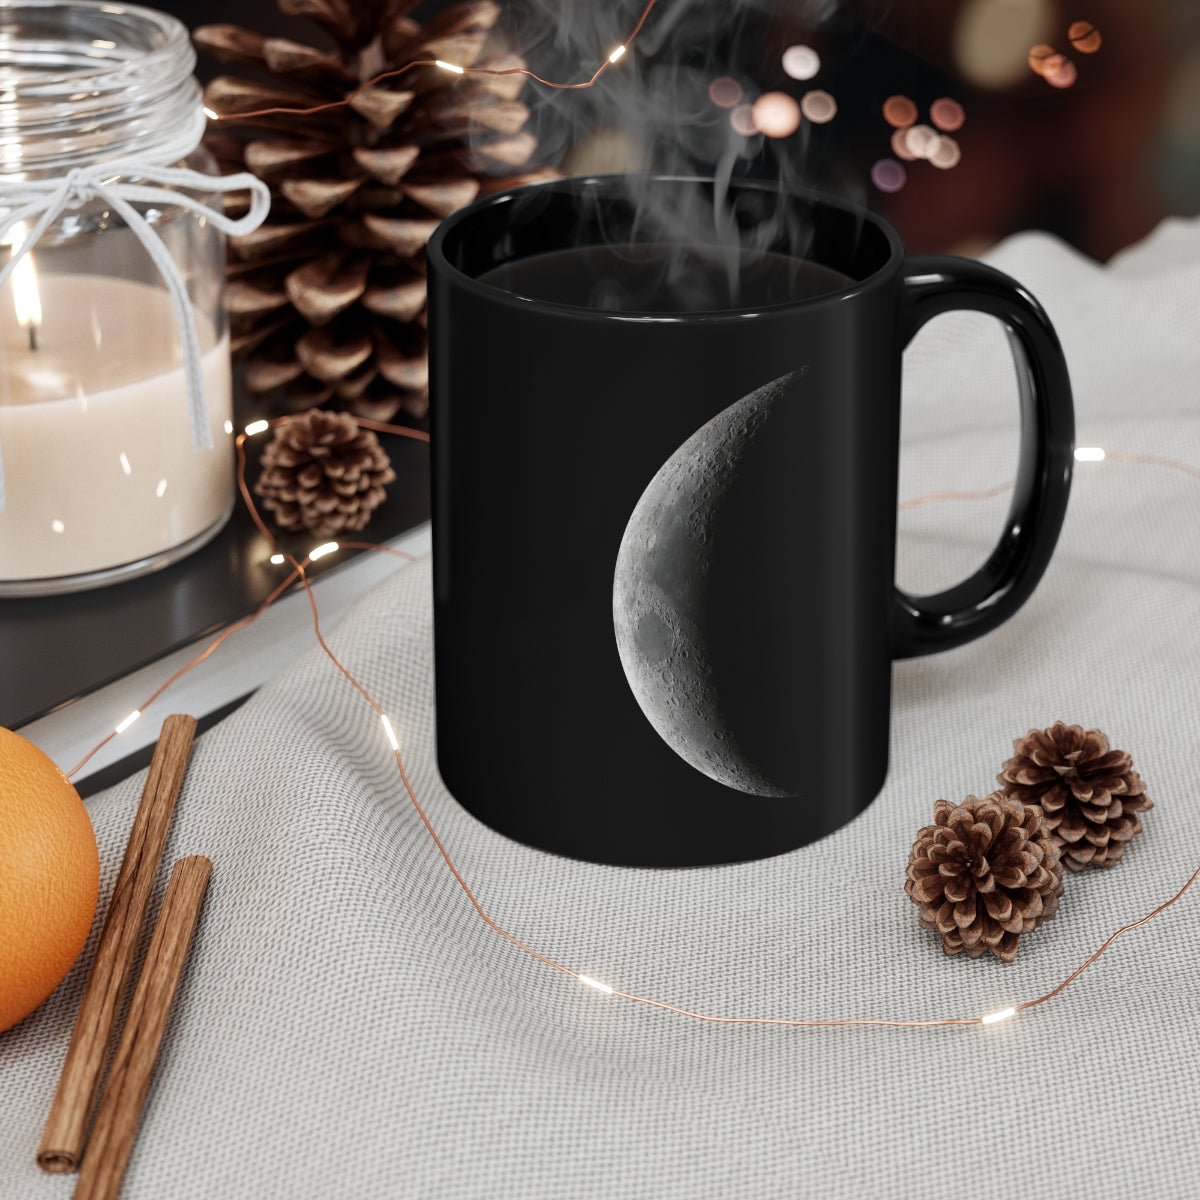 Crescent Moon 11oz Black Mug